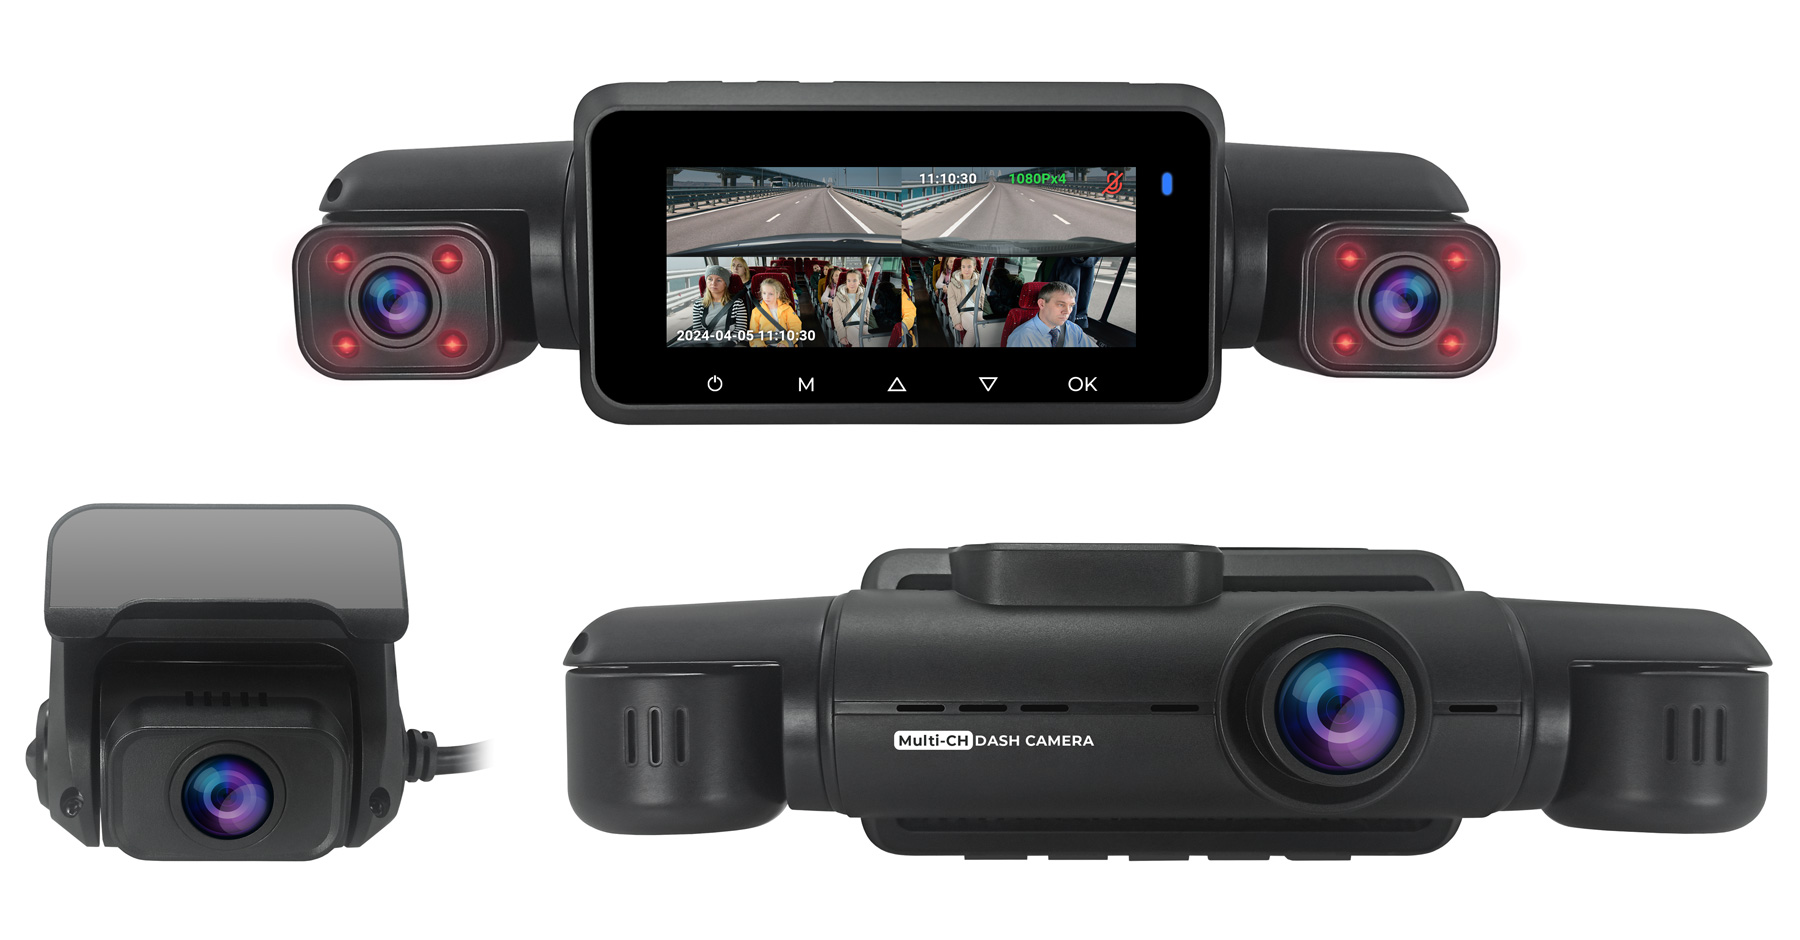 Автомобильный видеорегистратор CARCAM 4CH FullHD (4x1080p) Super Real View 360º WiFi DASH CAM GPS DVR CC-365 видеорегистратор hd 2k xiaomi botslab 360 dash cam g500h